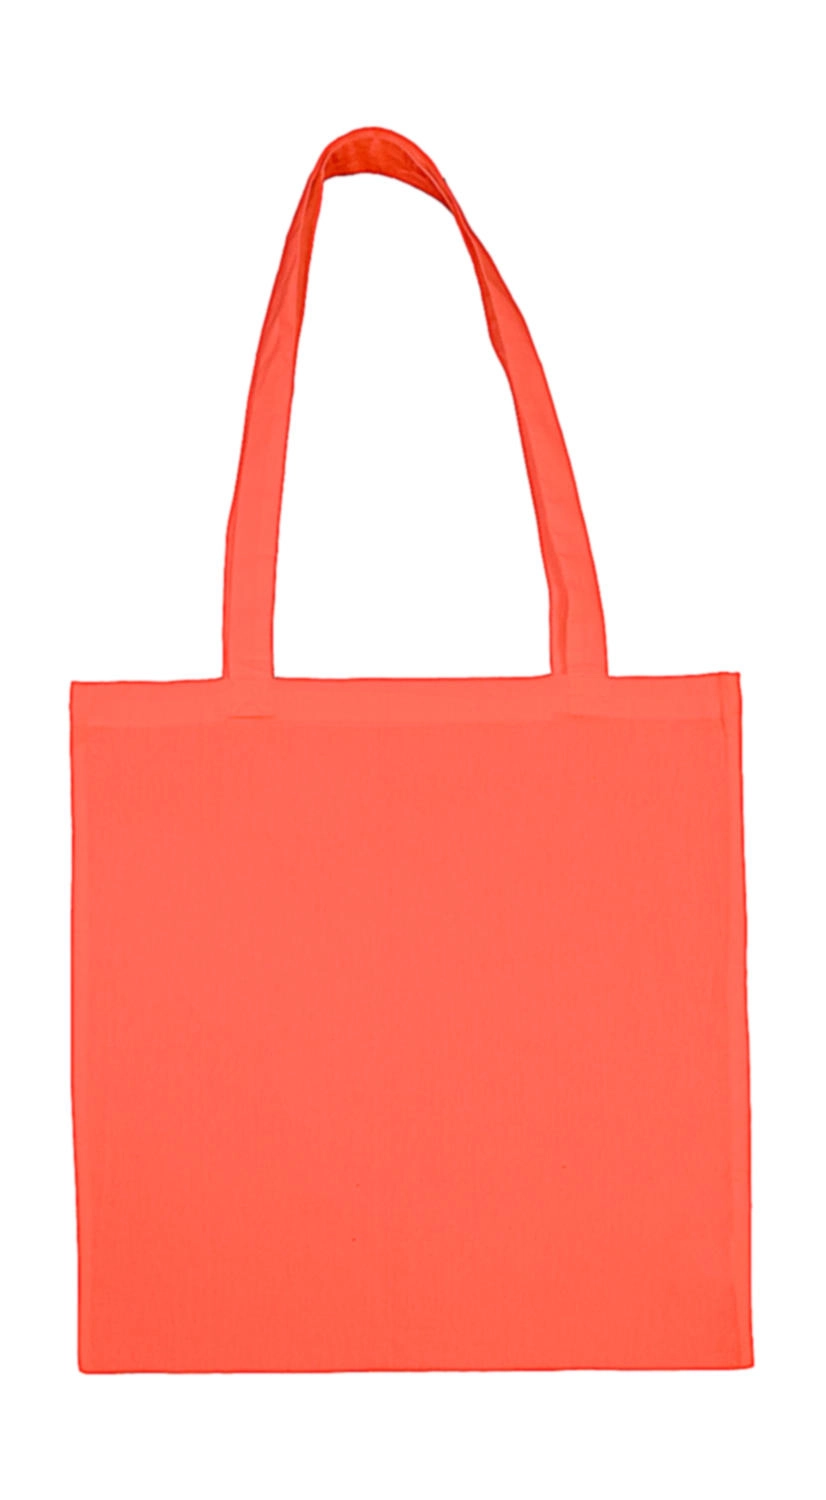 Cotton Bag LH zum Besticken und Bedrucken in der Farbe Peach Echo mit Ihren Logo, Schriftzug oder Motiv.